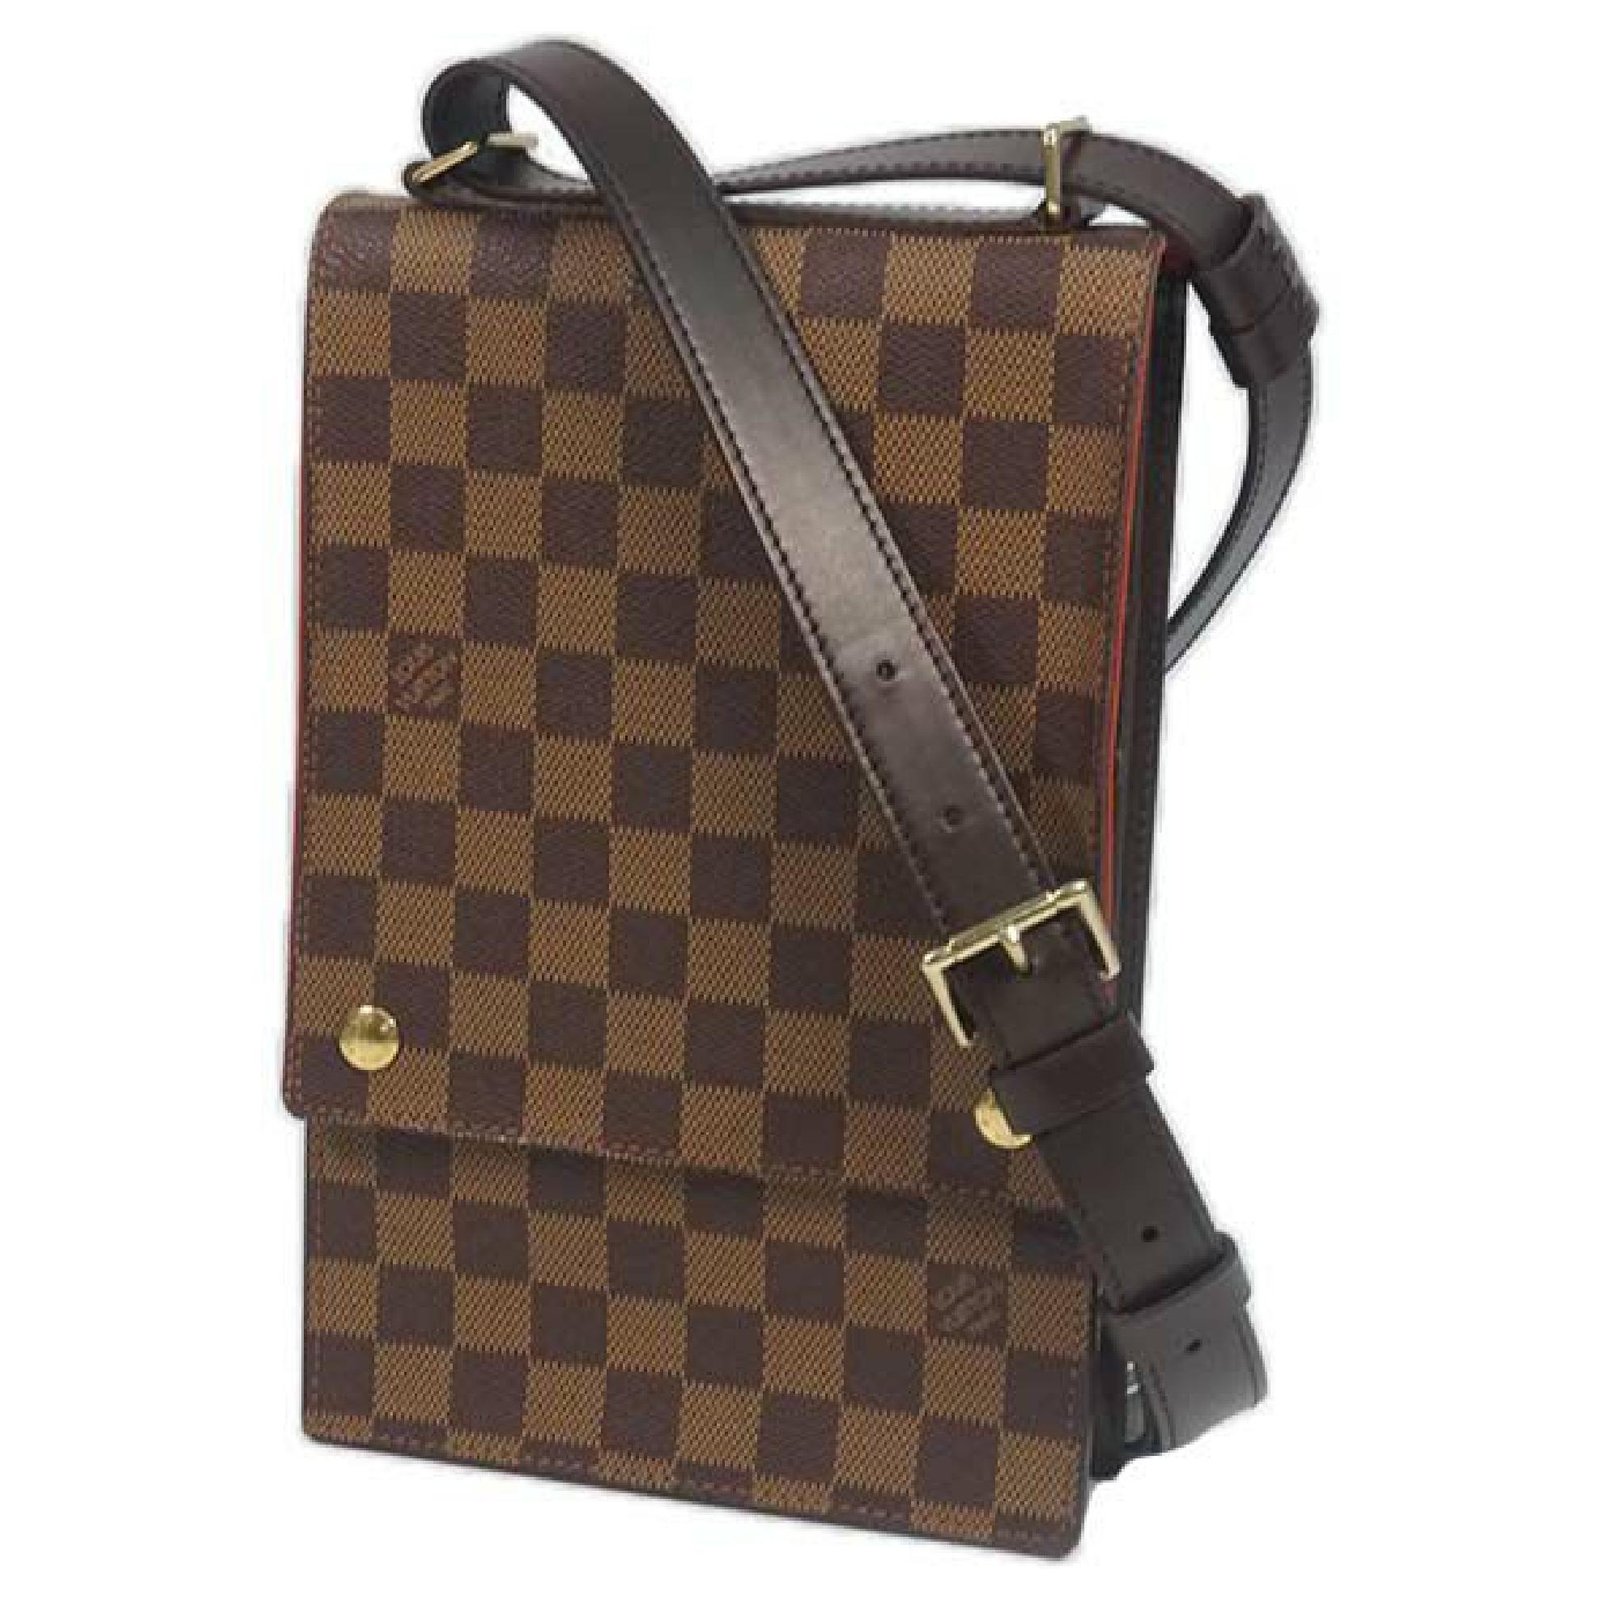 Louis Vuitton Damier Ebene Portobello Crossbody Bag